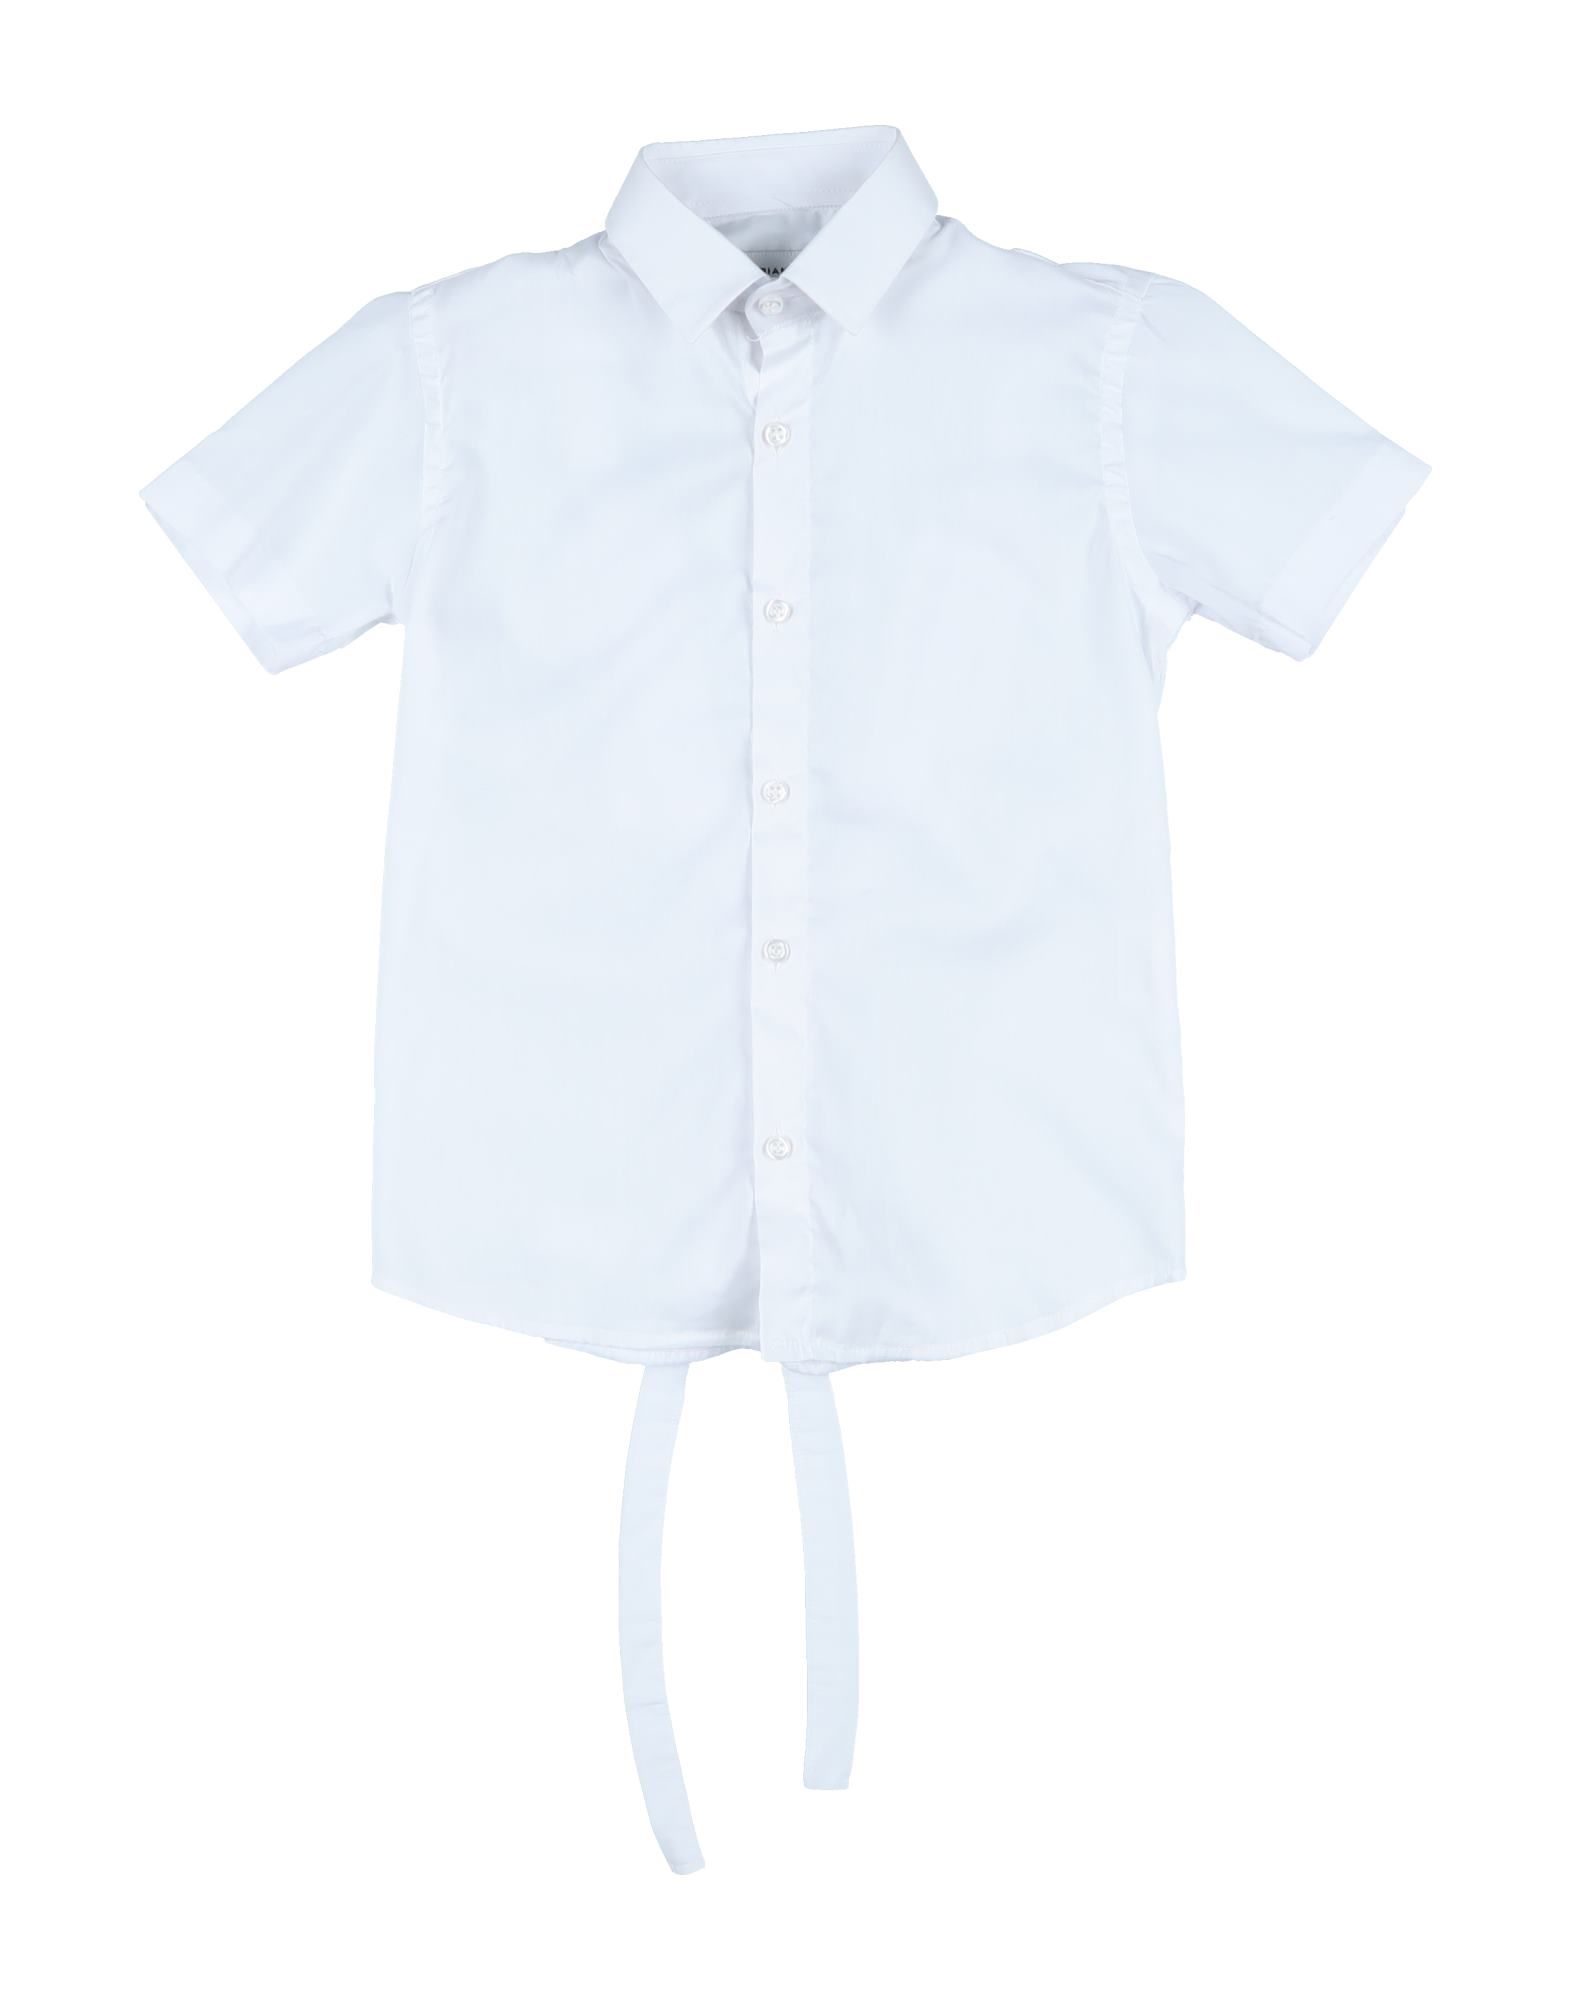 Brian Rush Kids' Shirts In White